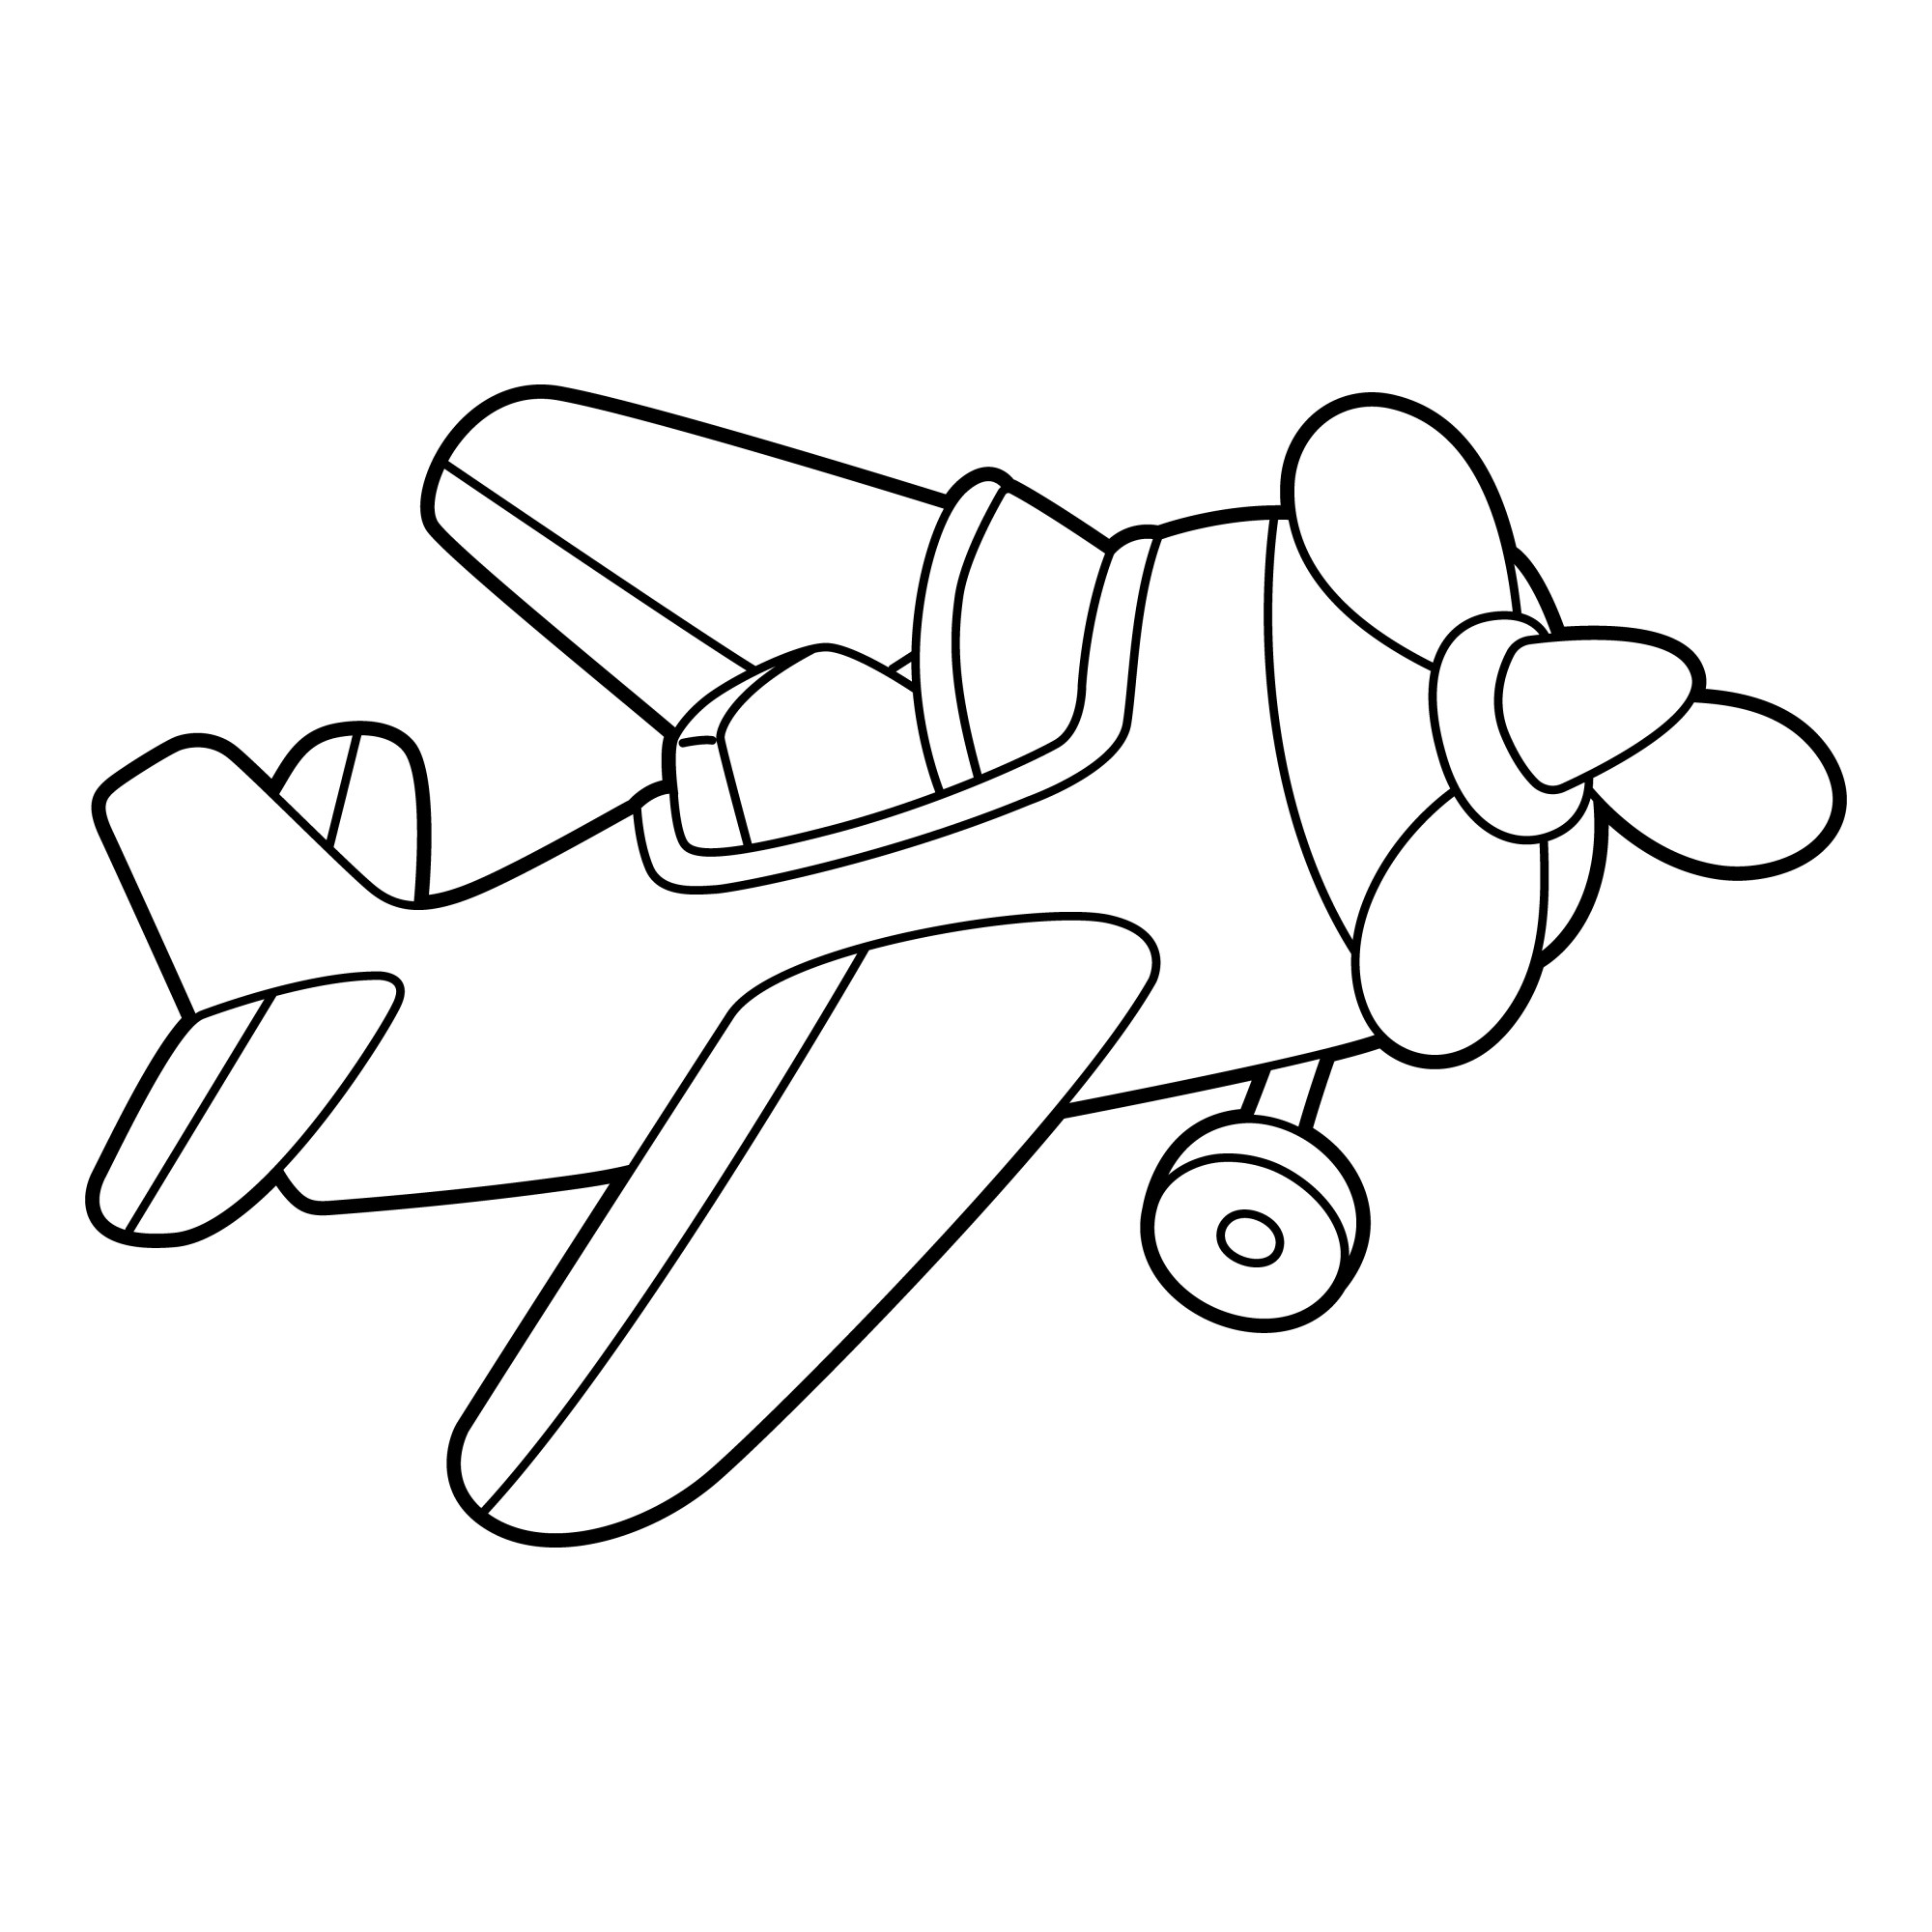 Раскраска для детей: самолетик «Легенда неба»